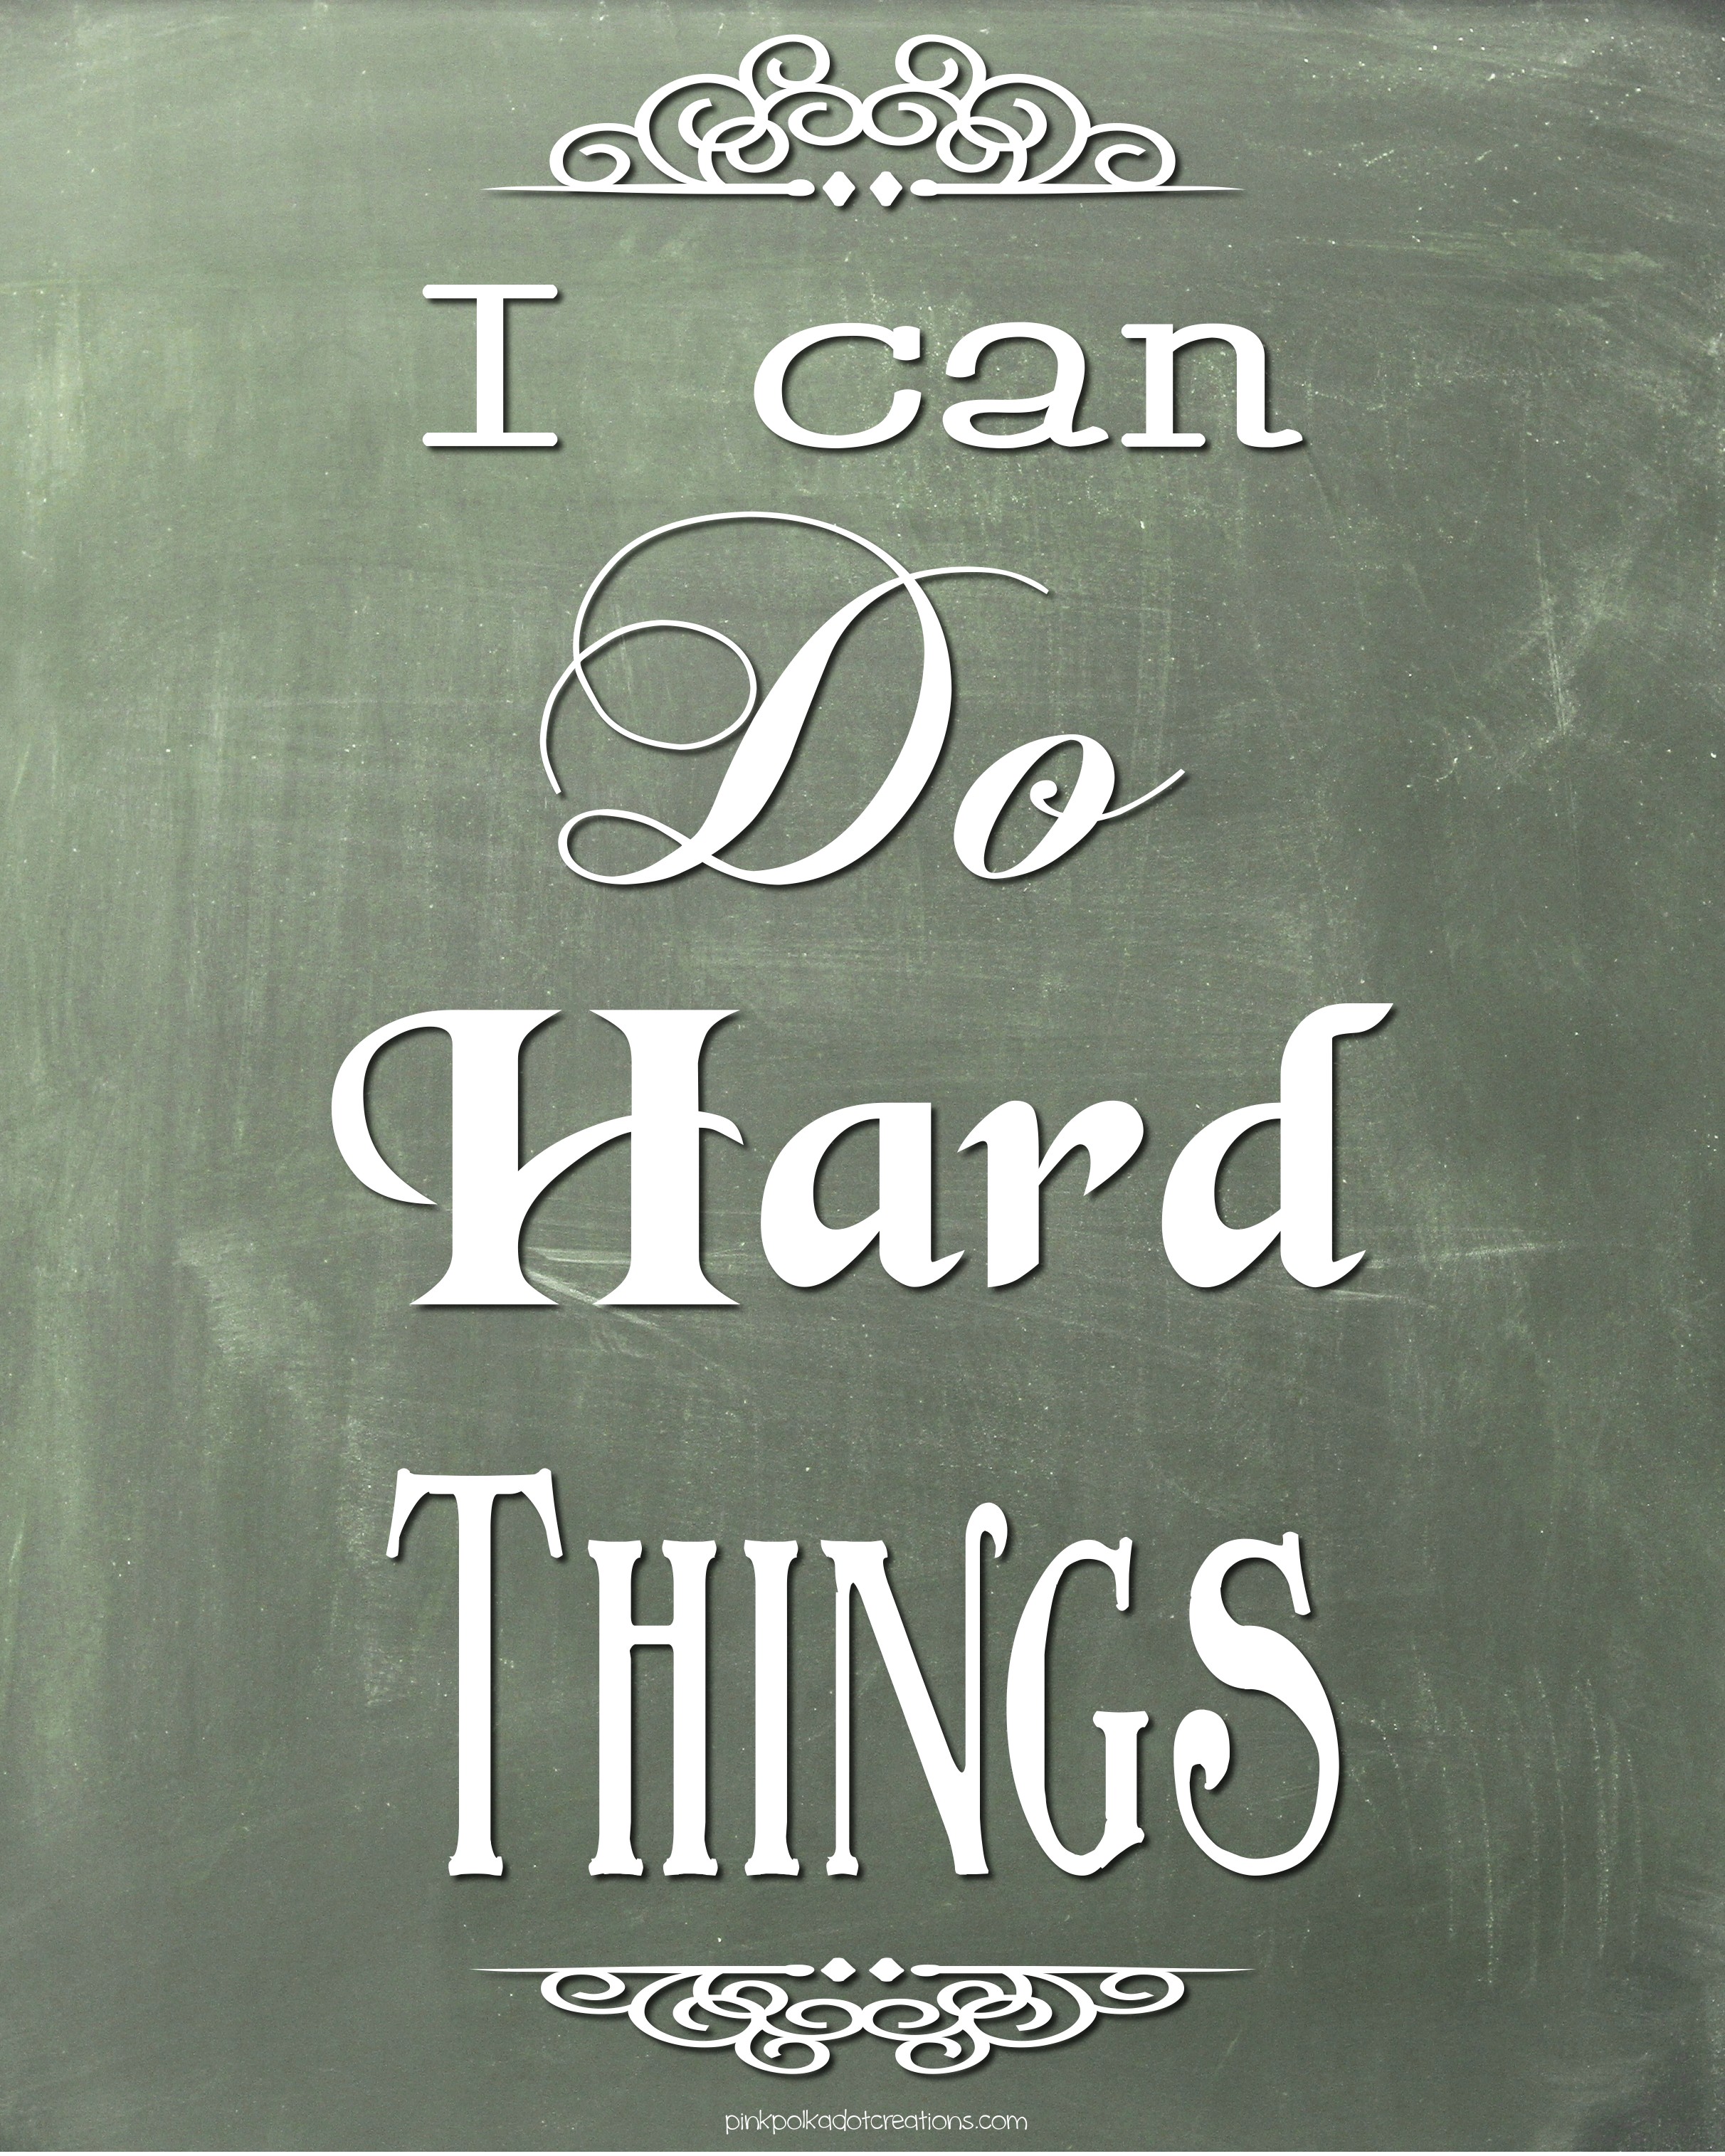 Hard things about hard things. Hard things. Do hard things. Hard things hard thing.